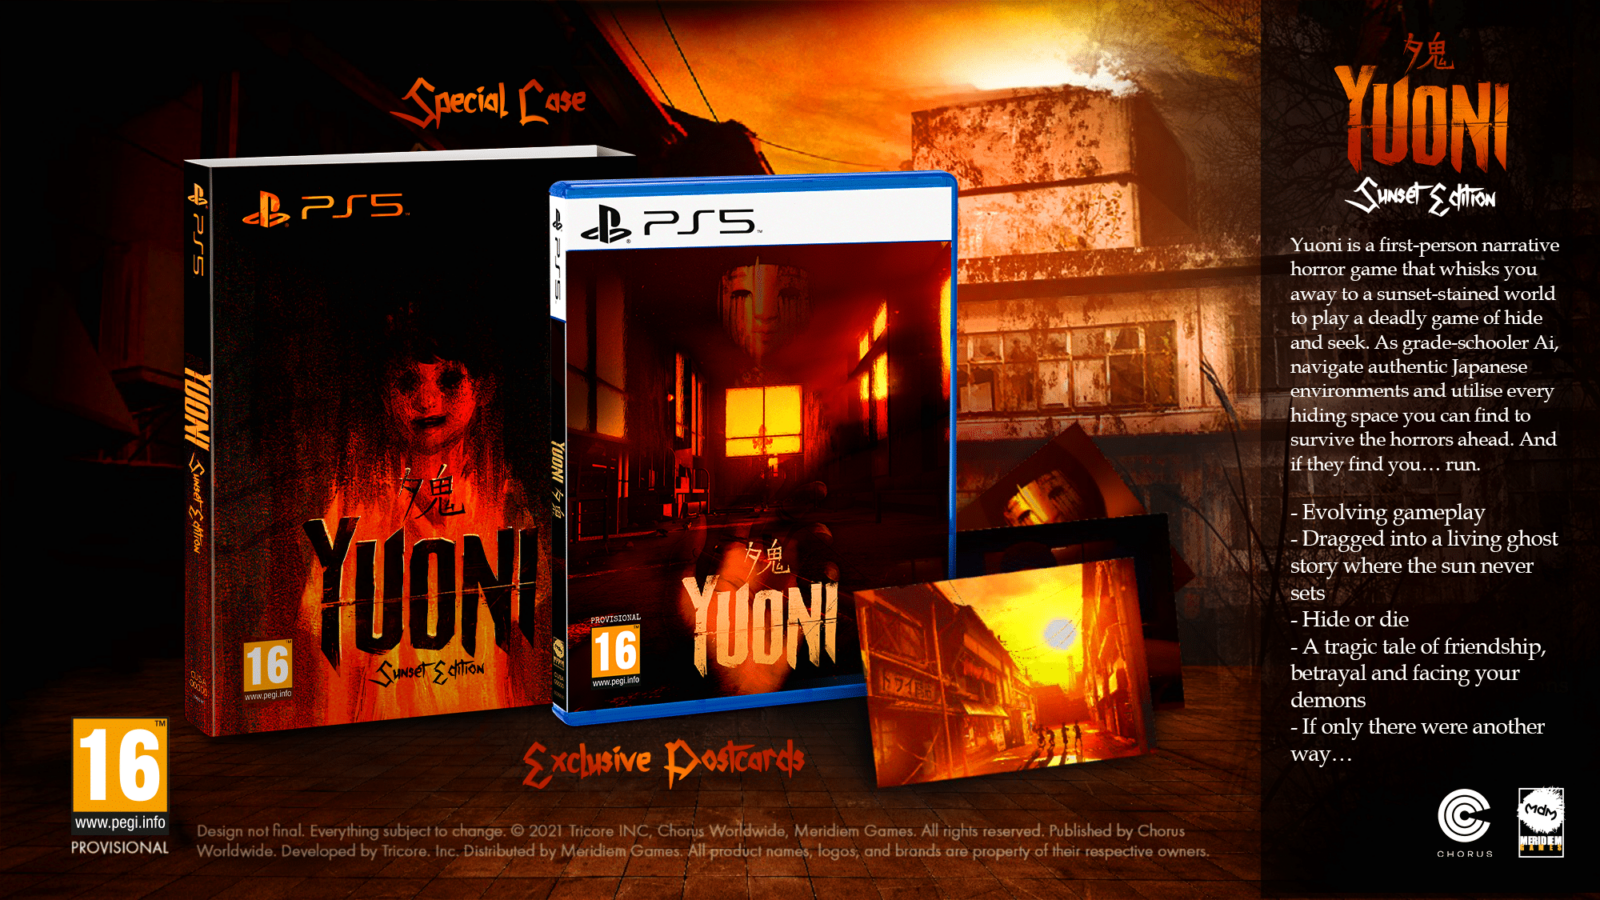 Annunciata l'edizione speciale di Yuoni per PlayStation 5: ecco il trailer thumbnail